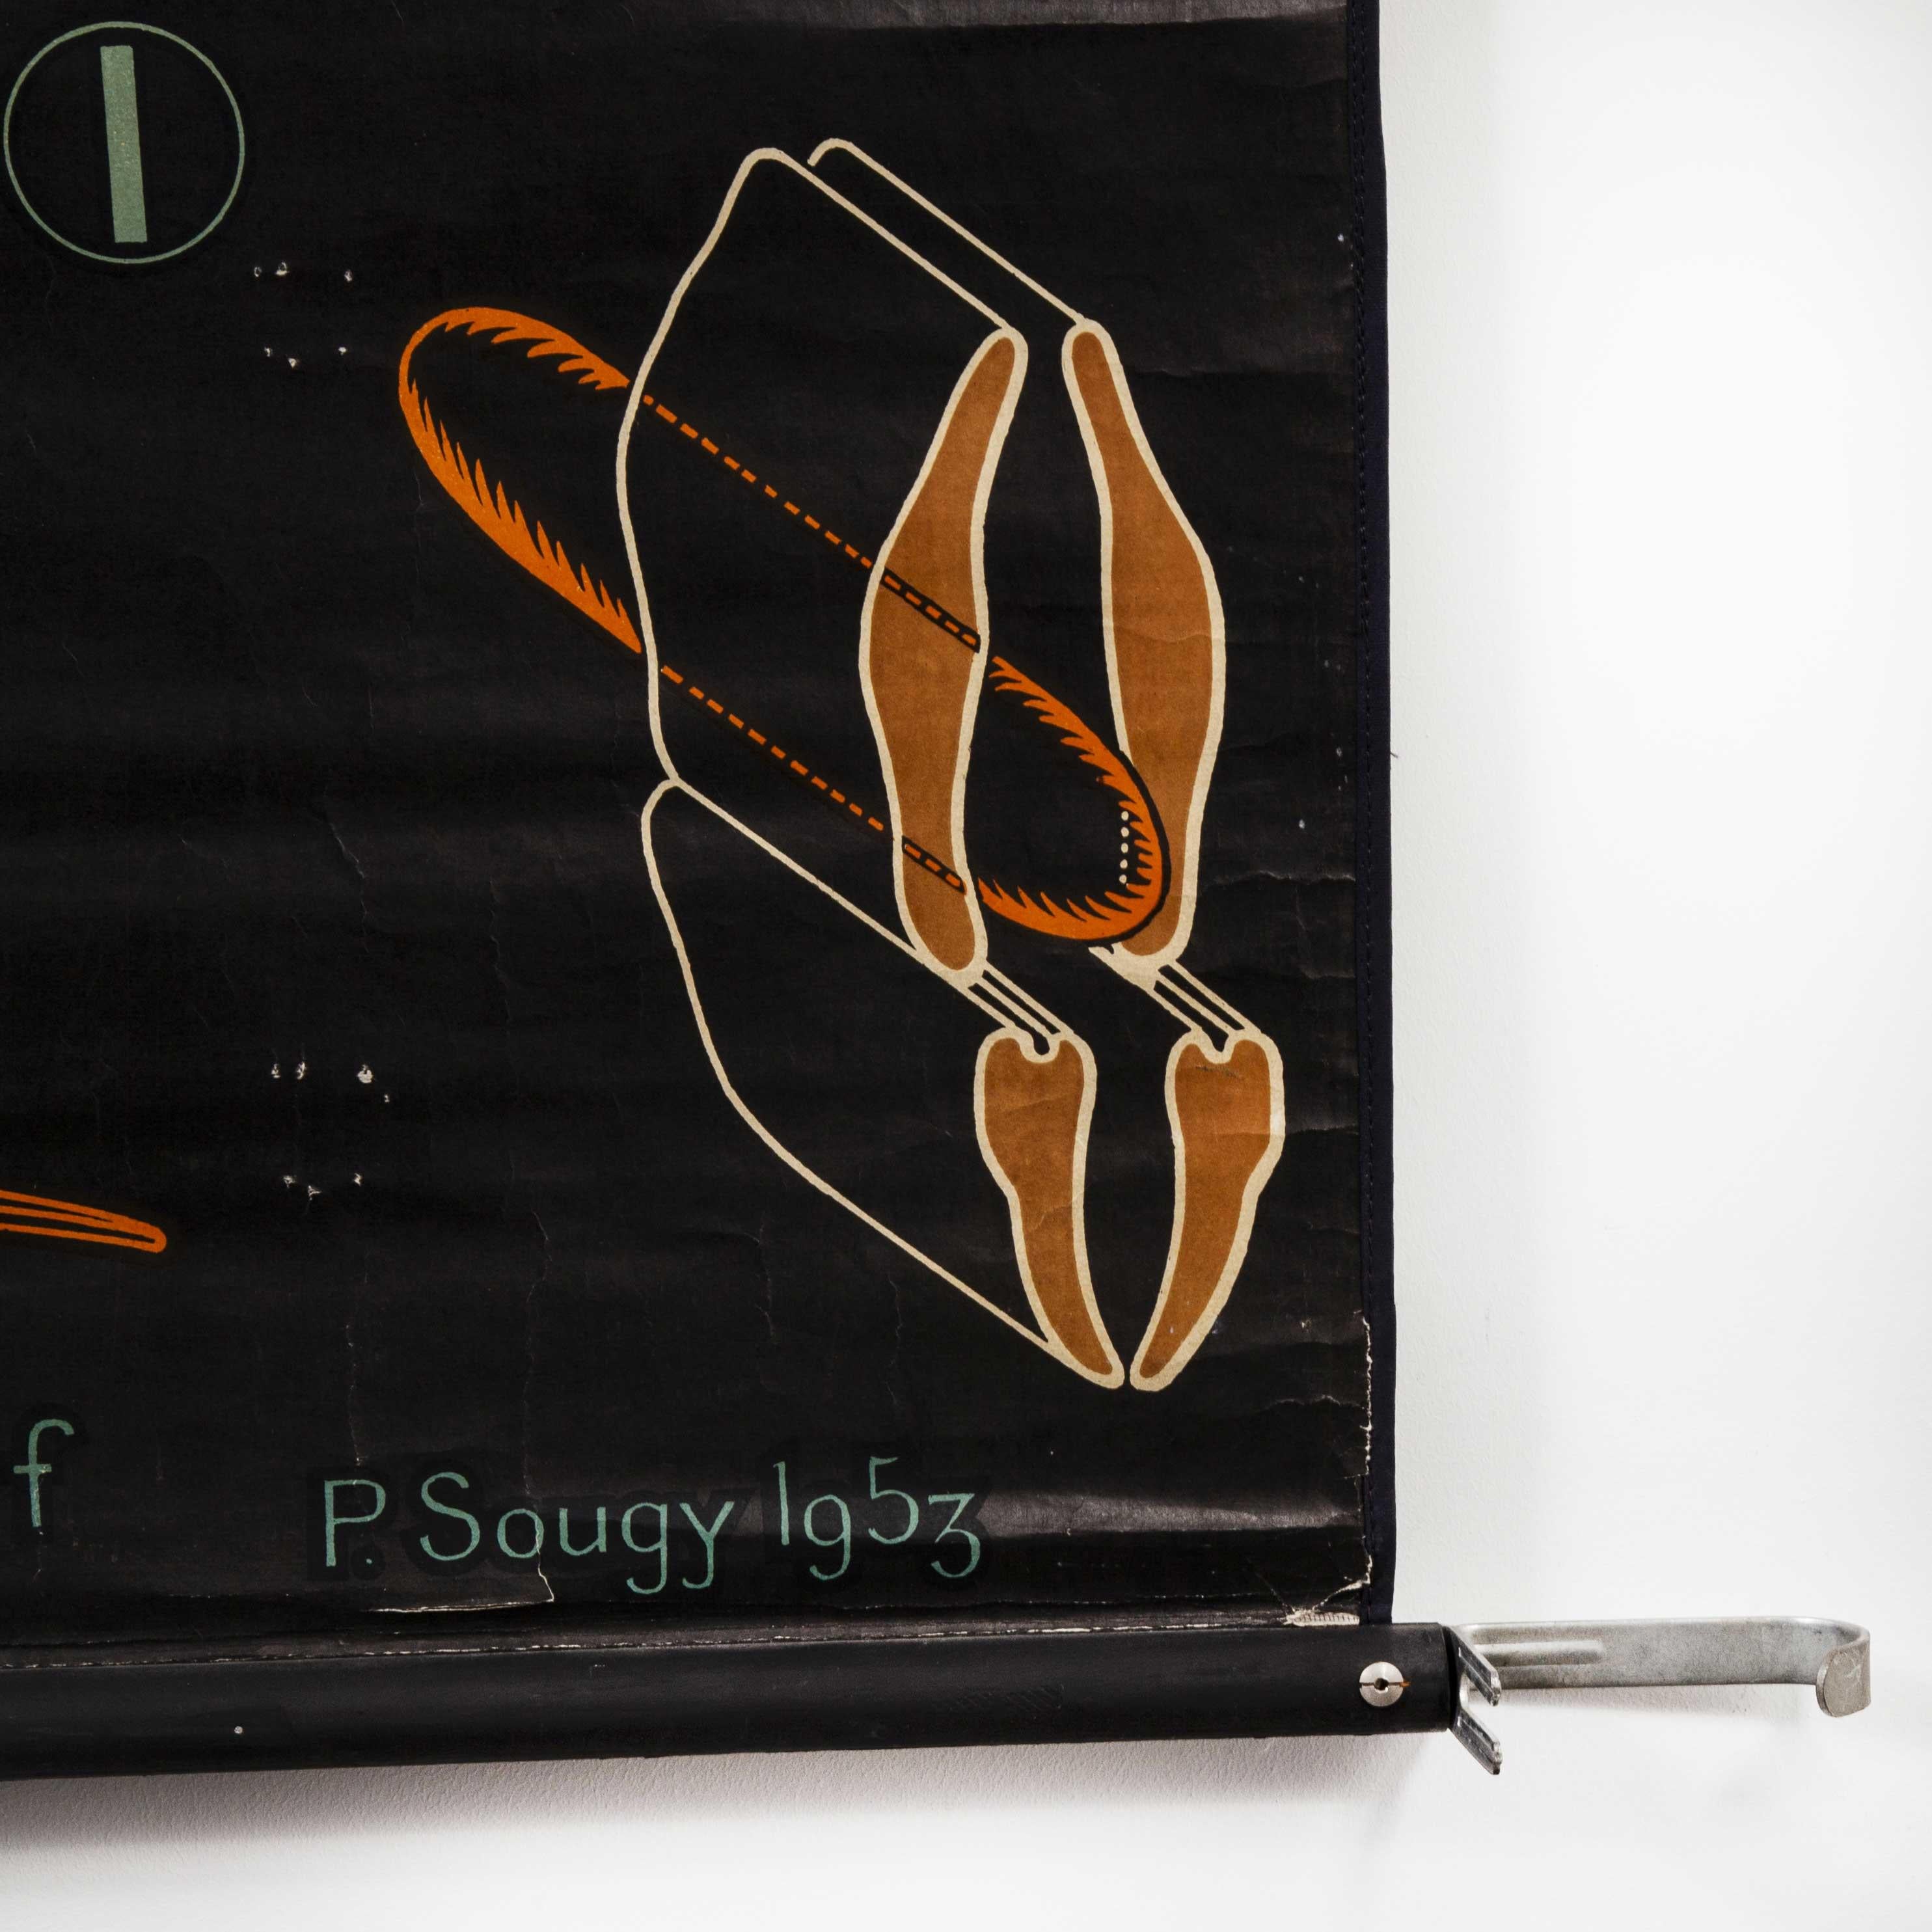 Mid-20th Century 1953 Dr Auzoux French Educational Chart - P.Sougy - Sauterelle 'Grasshopper' S45